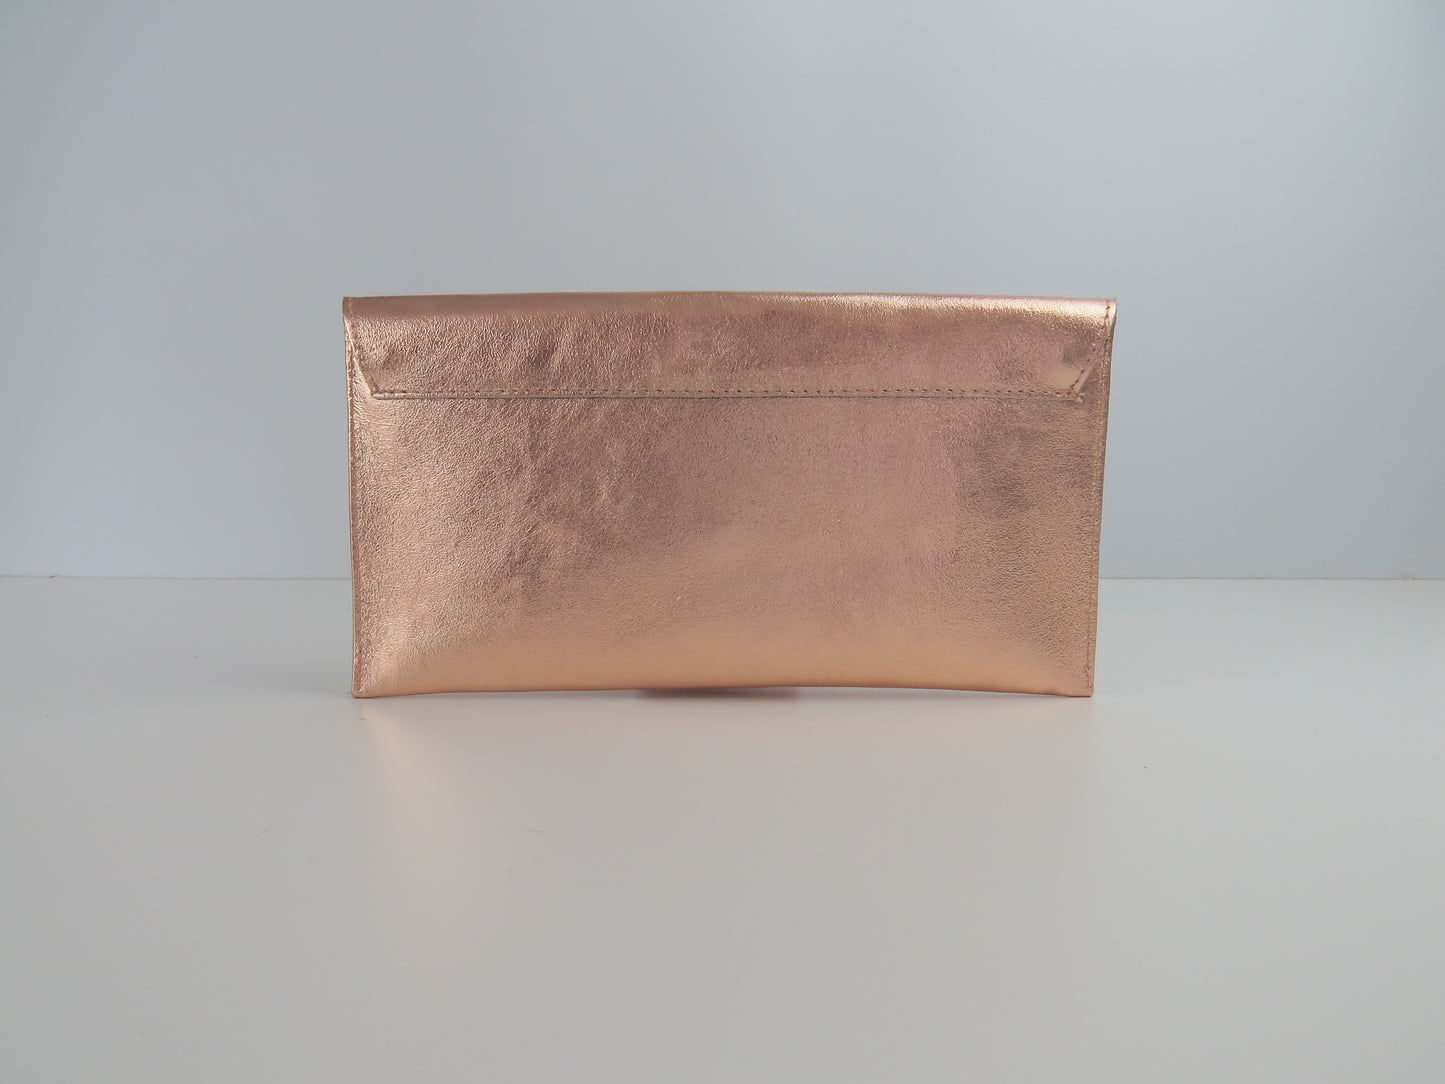 Metallic Rose Gold Envelope Clutch Bag